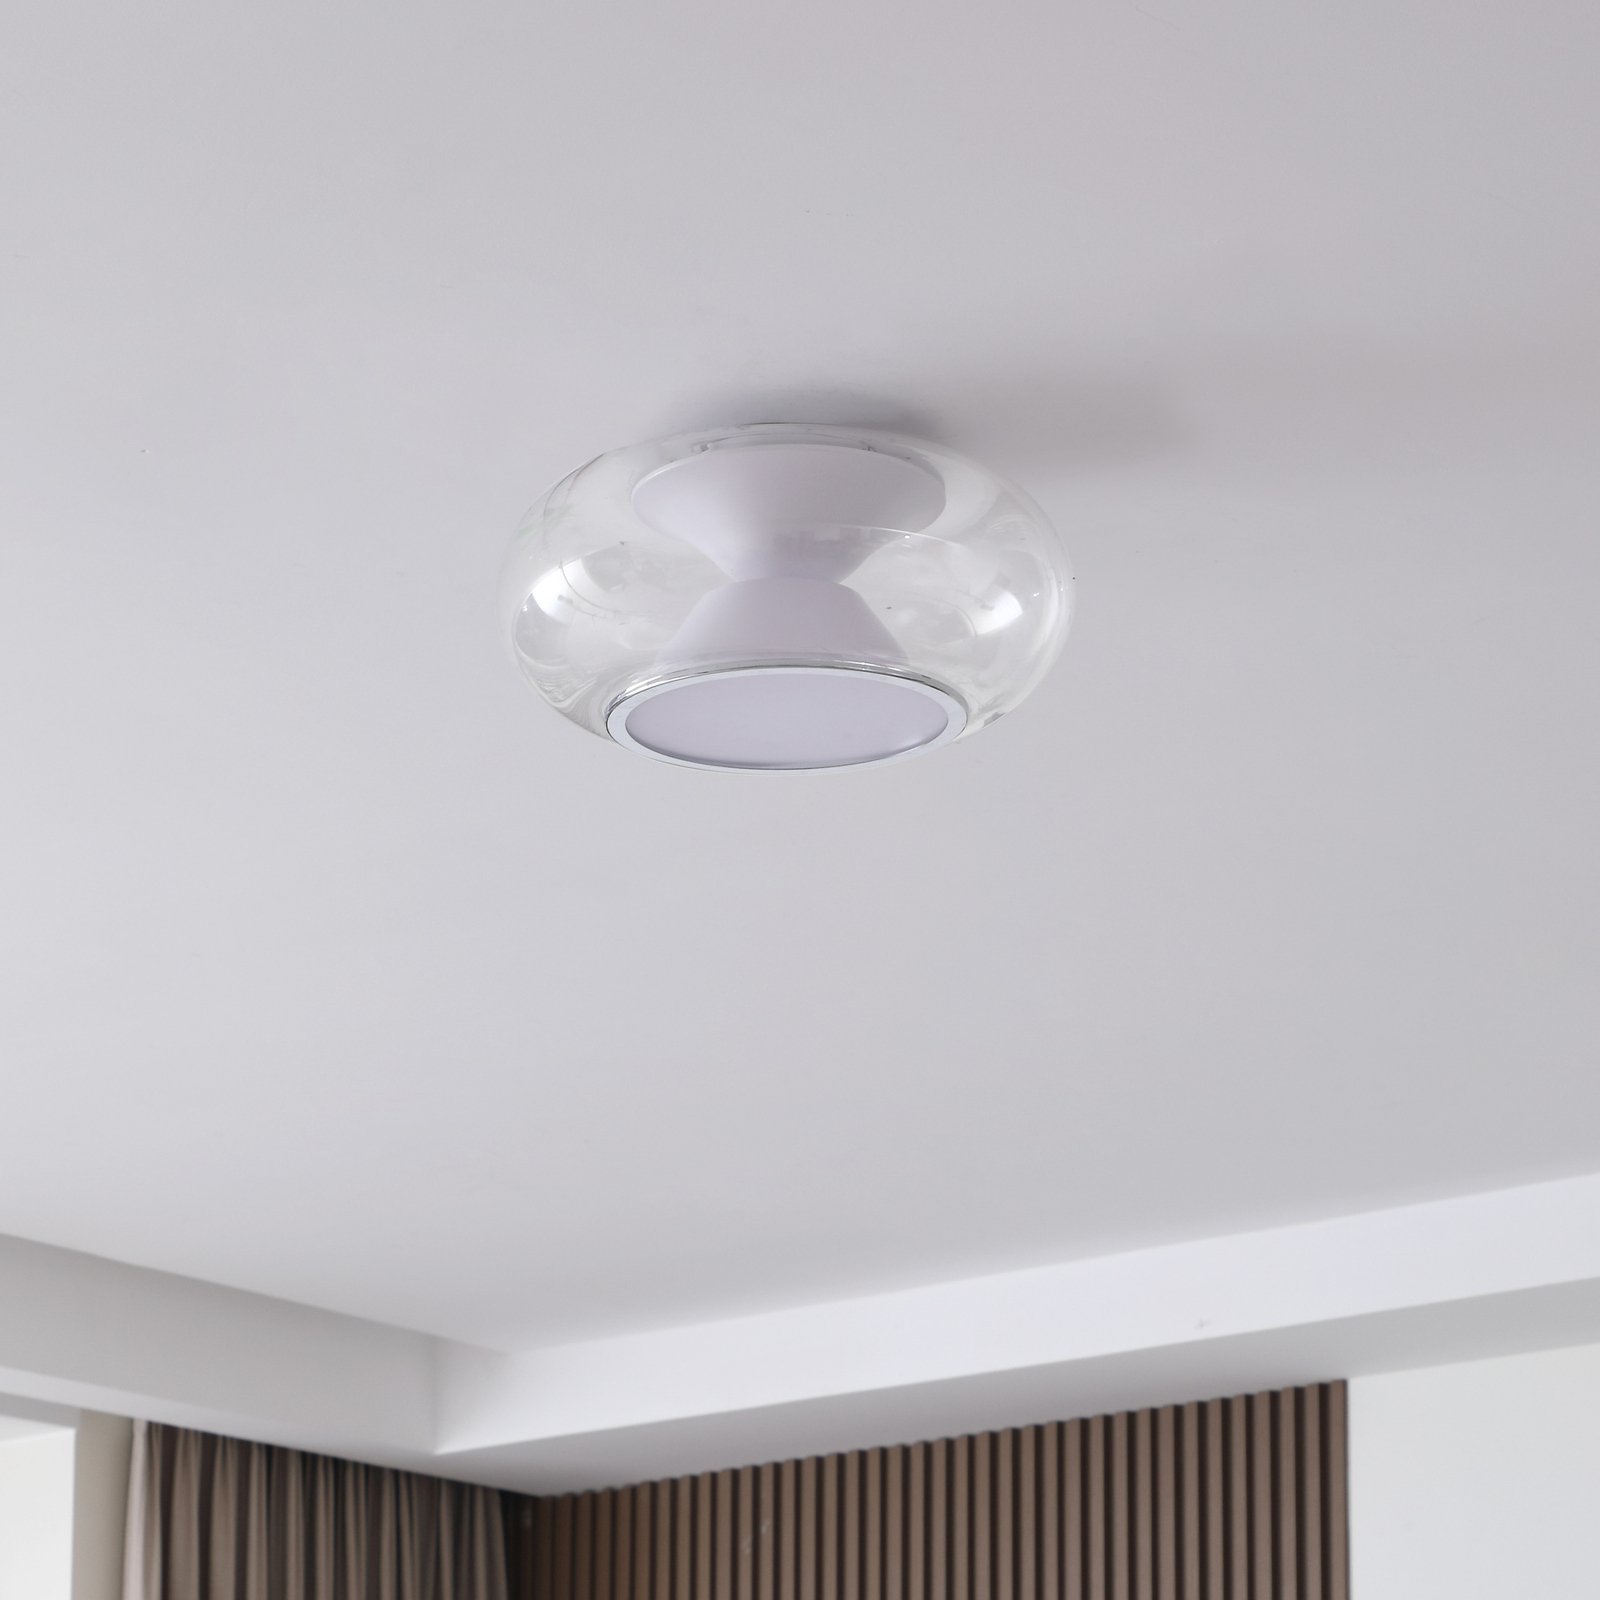 Lucande Orasa LED plafondlamp, glas, wit/helder, Ø 43 cm